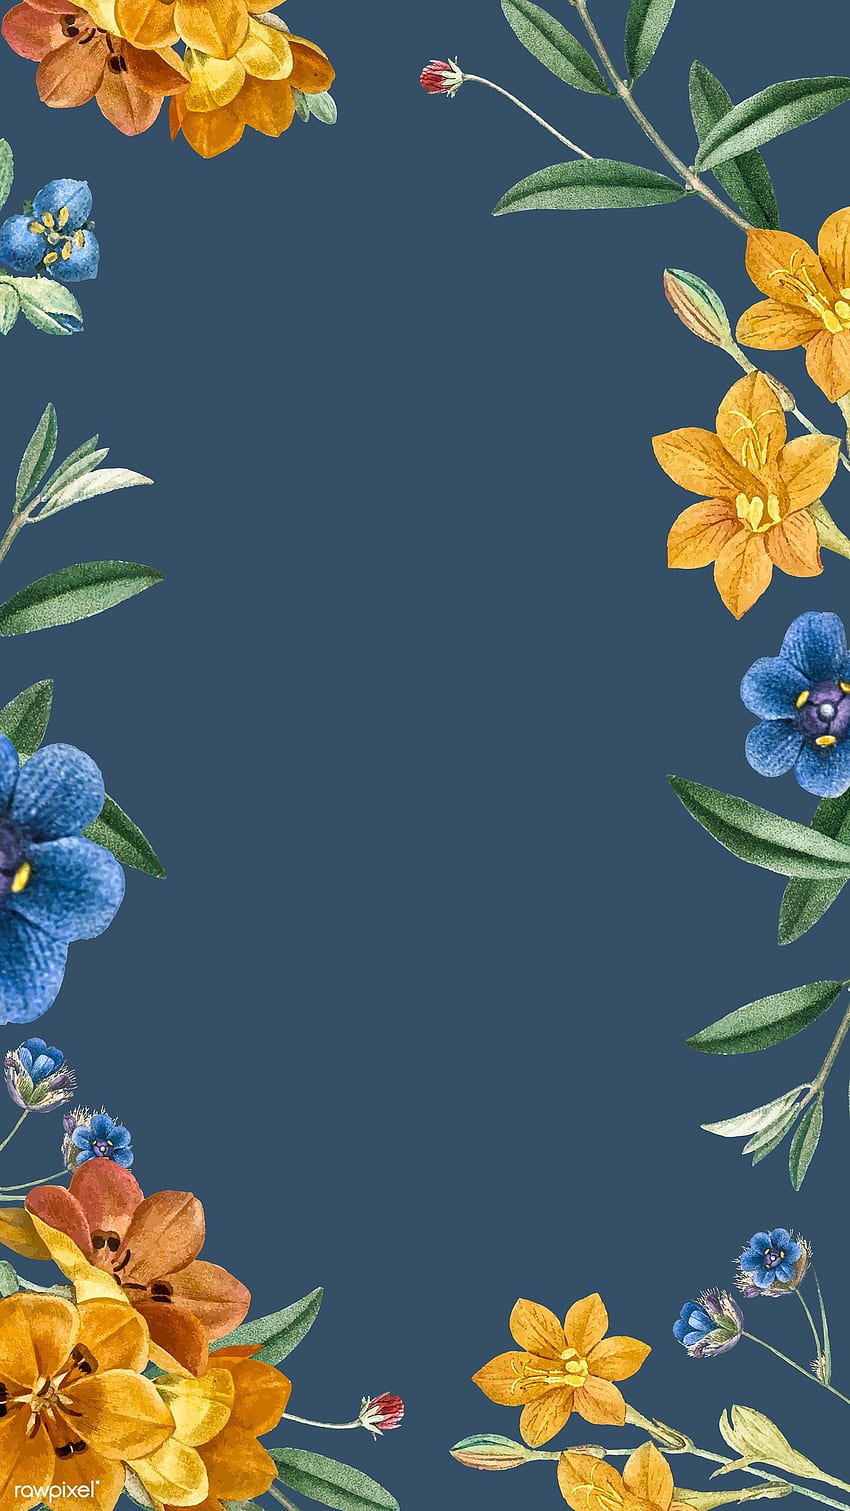 Premium-Vektor des Handy-Hintergrunds mit blauem Blumenrahmen. Telefonhintergrund, iPhone 6 Blume, iPhone HD-Handy-Hintergrundbild